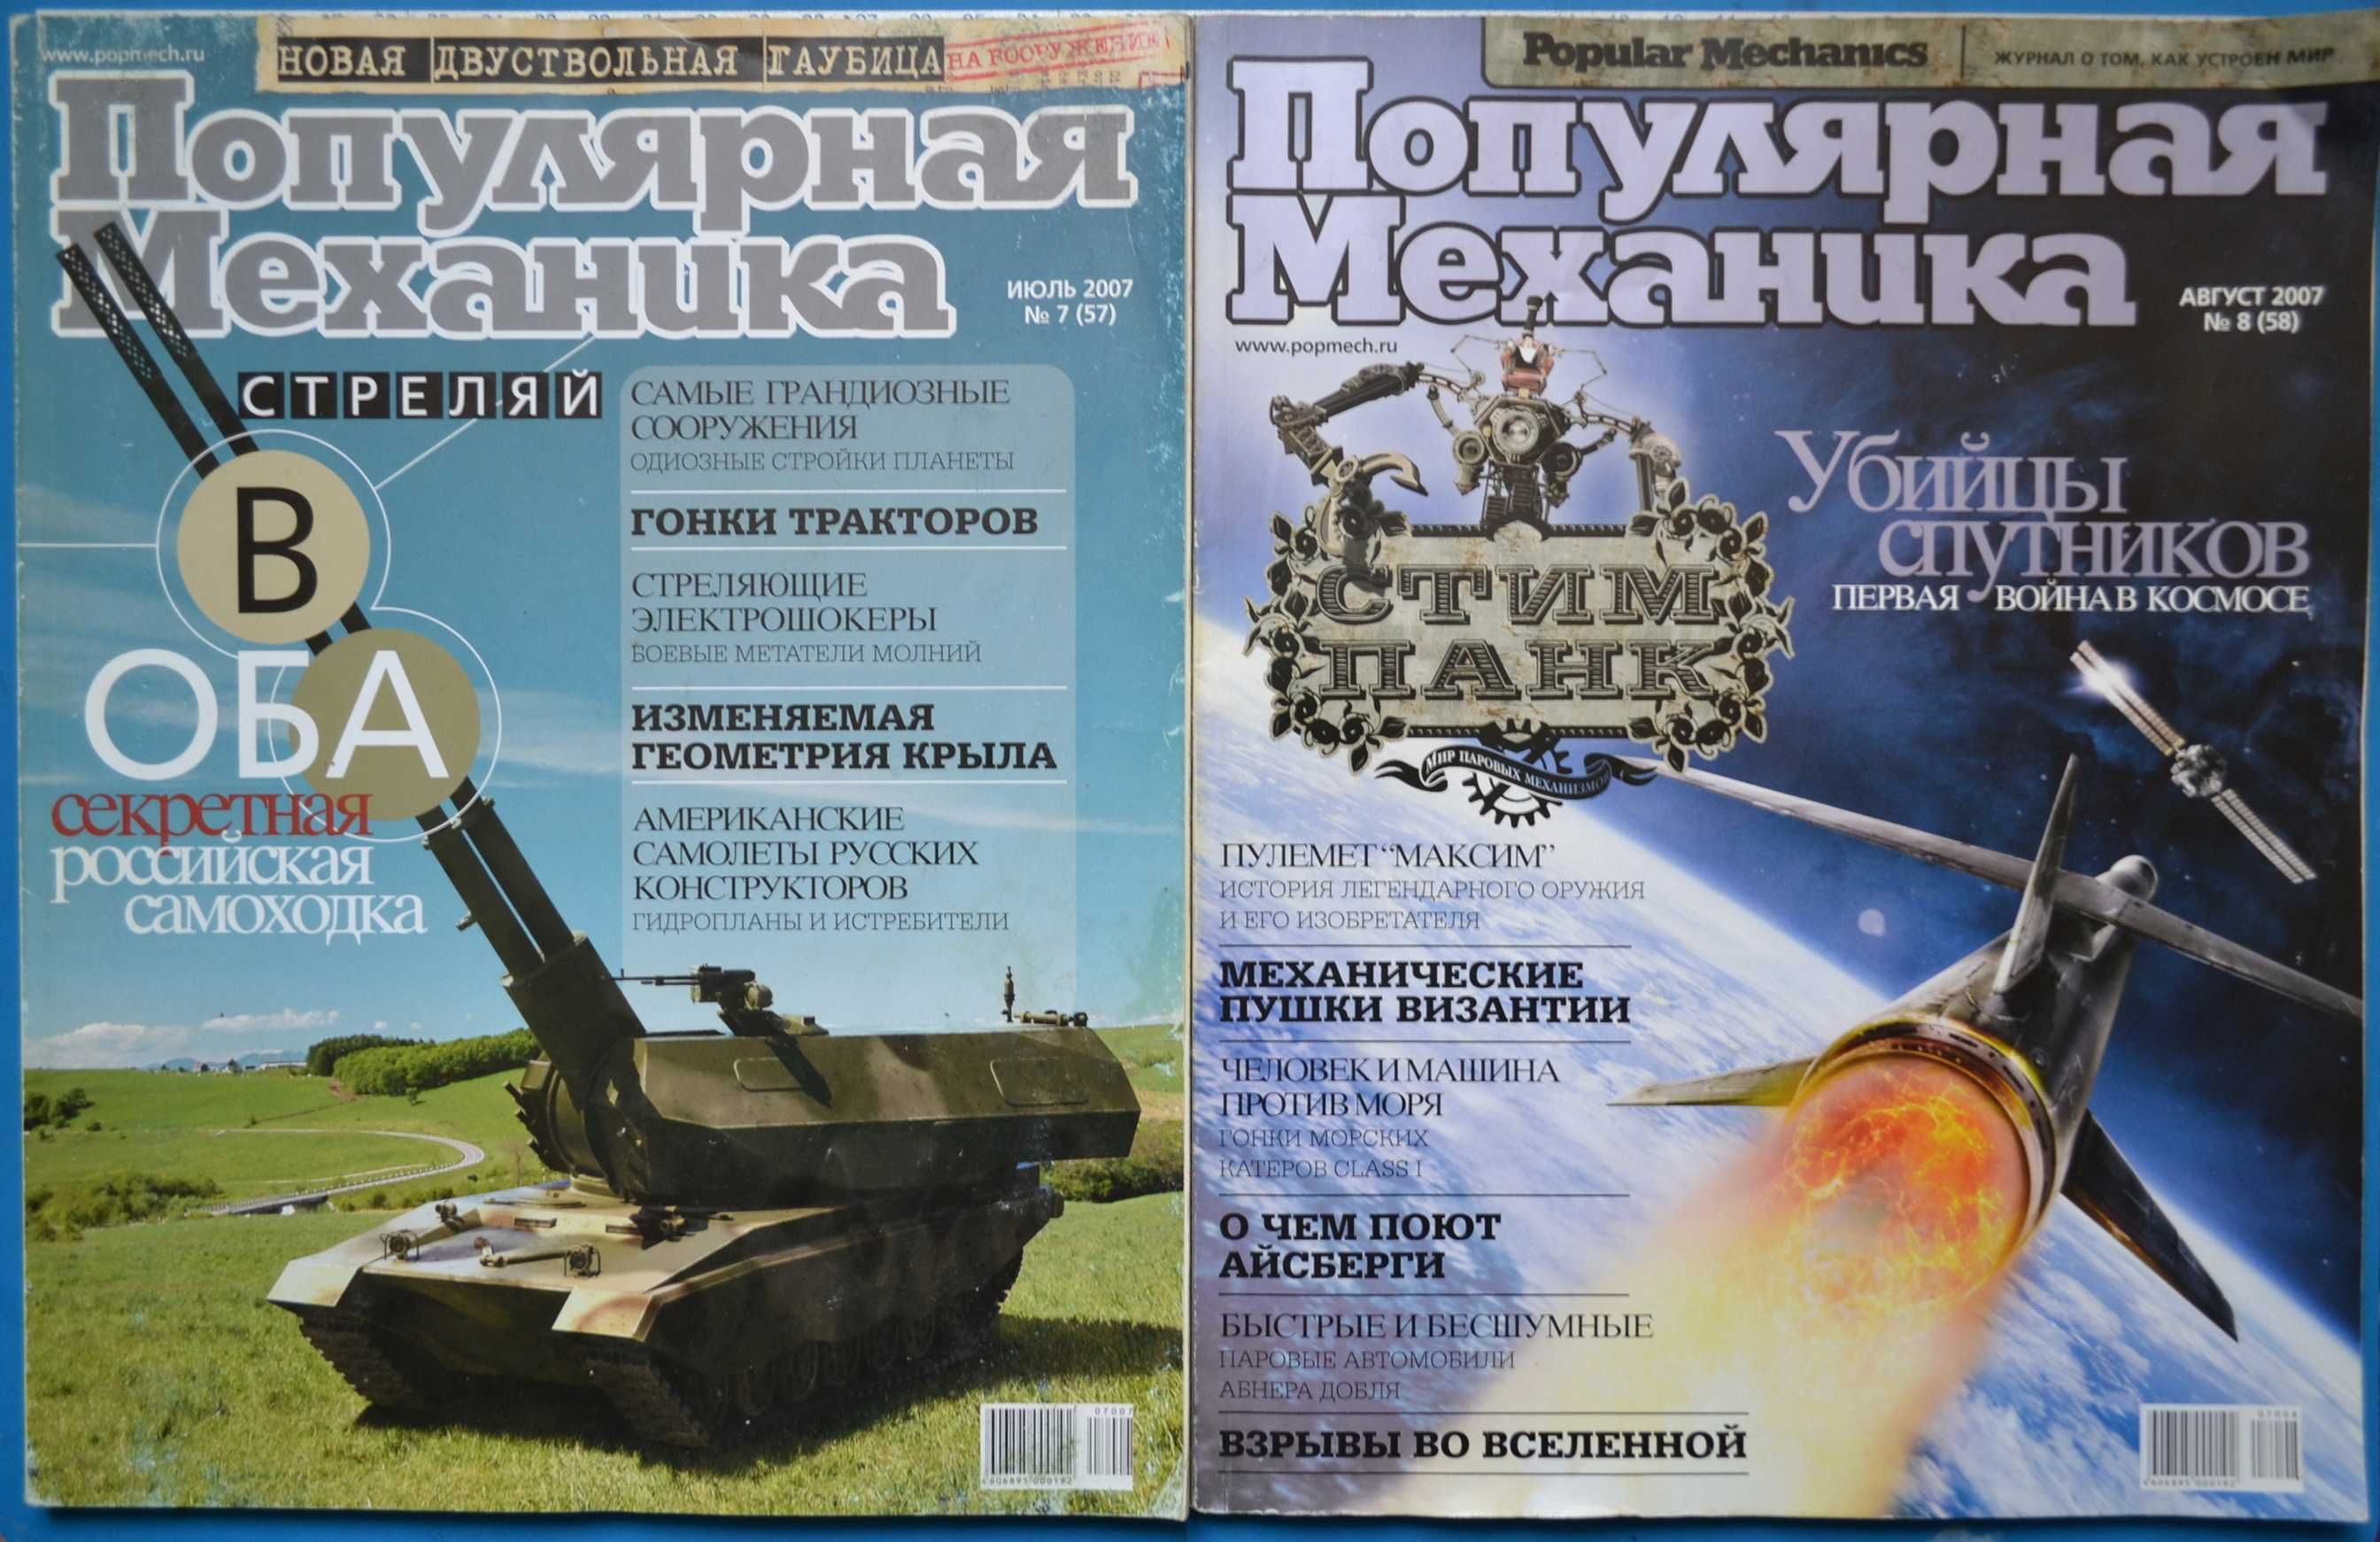 Журнал "Популярная механика" (Росія) 2007 (№№ 7-8)